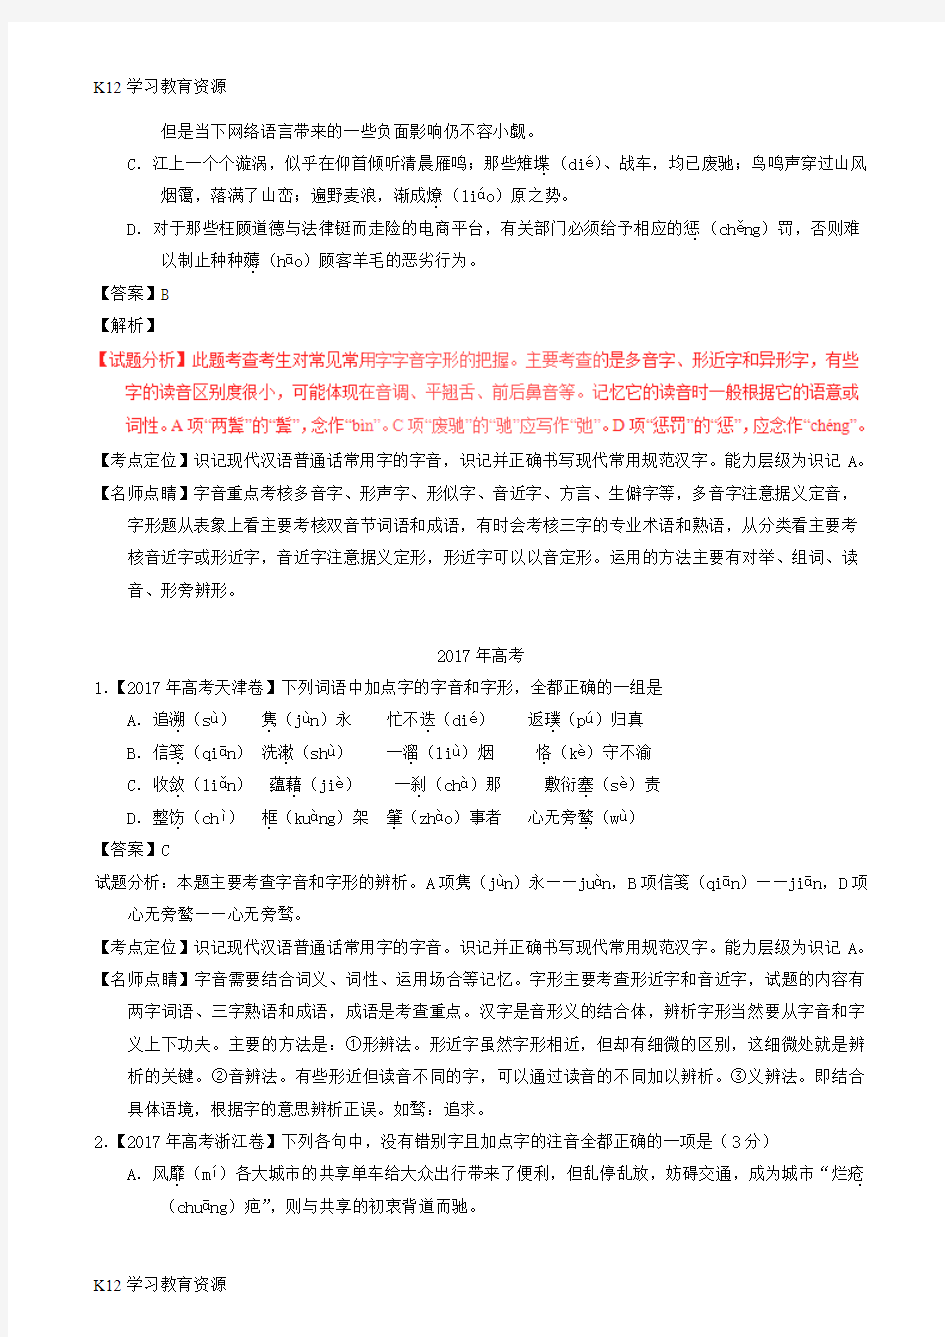 [K12学习]三年高考(2016-2018)高考语文试题分项版解析 专题13 识记现代汉语普通话常用